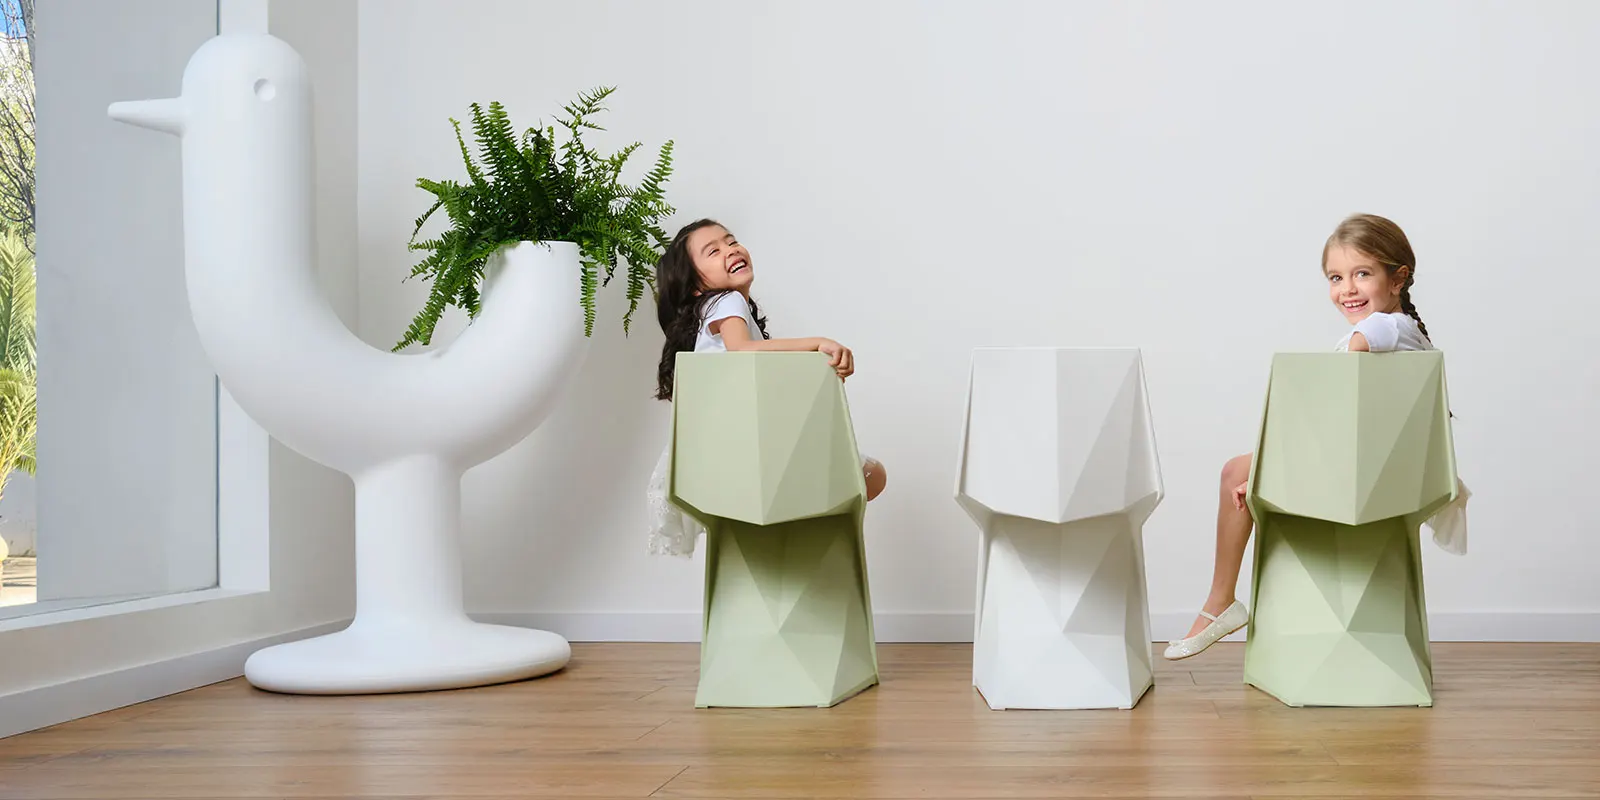 chaises-mobilier-enfants-contract-design-voxel-karim-rashid-vondom (4) copie